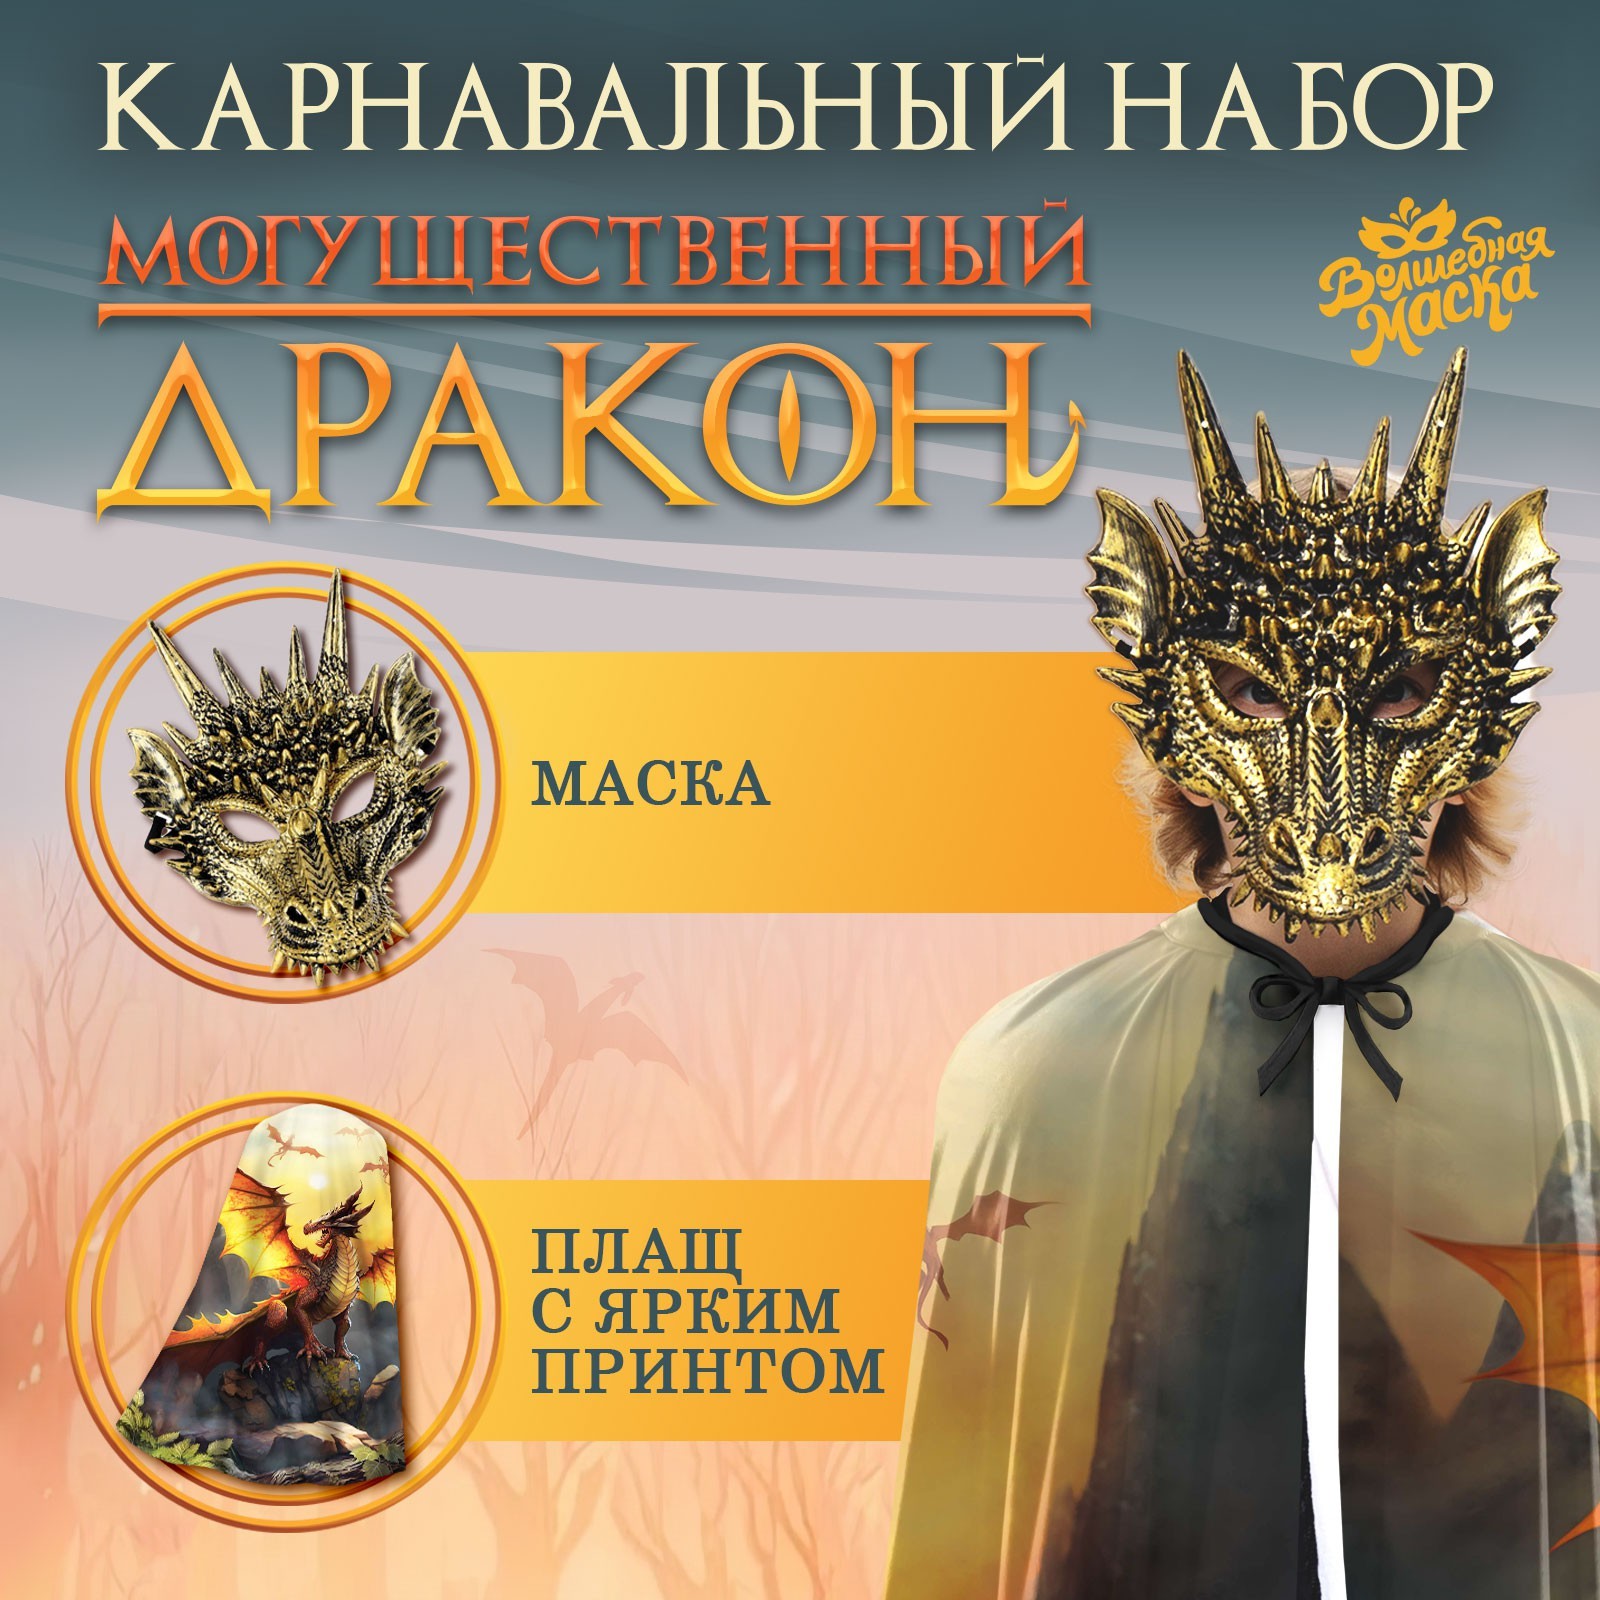 Карнавальный набор Могущественный дракон плащ и маска   9668068 (Вид 1)